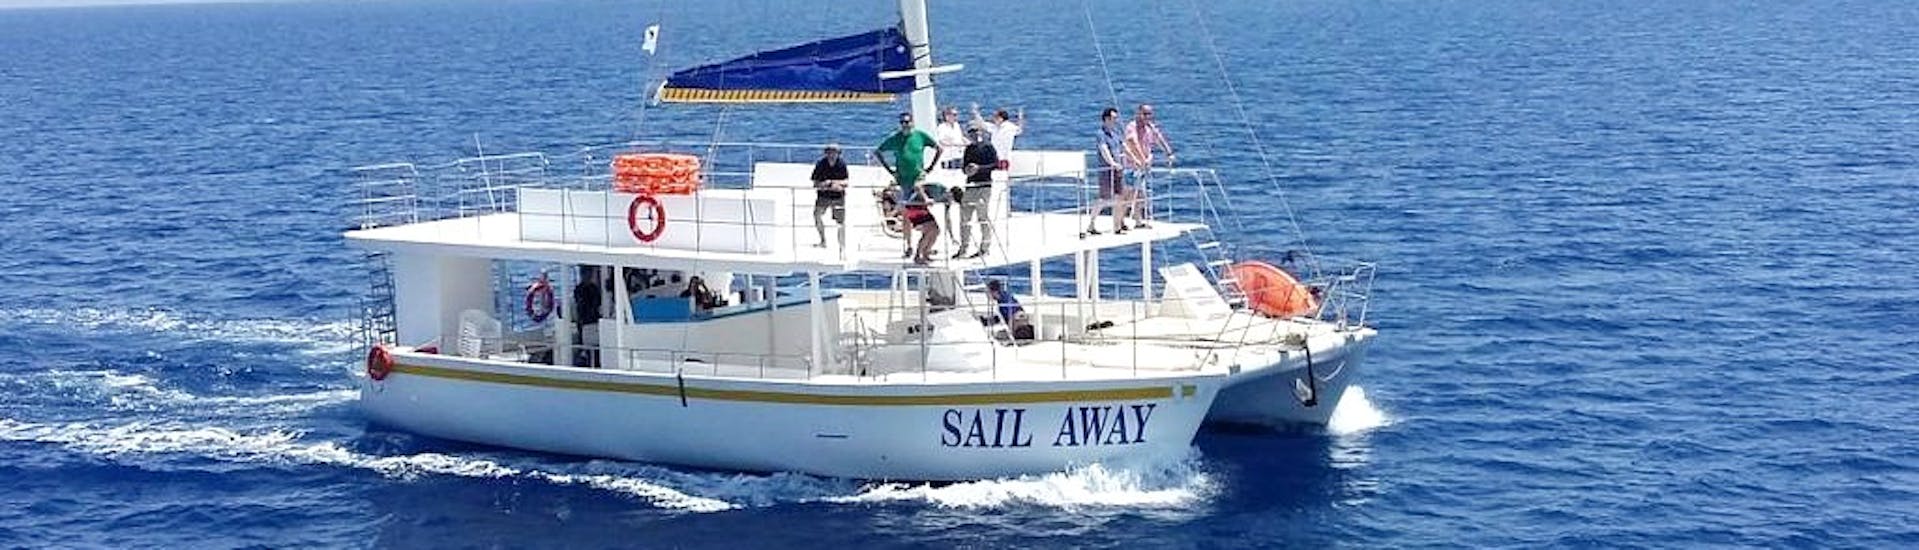 Photo du catamaran Sail Away utilisé par Relax-Cruises Limassol pour les balades en bateau.